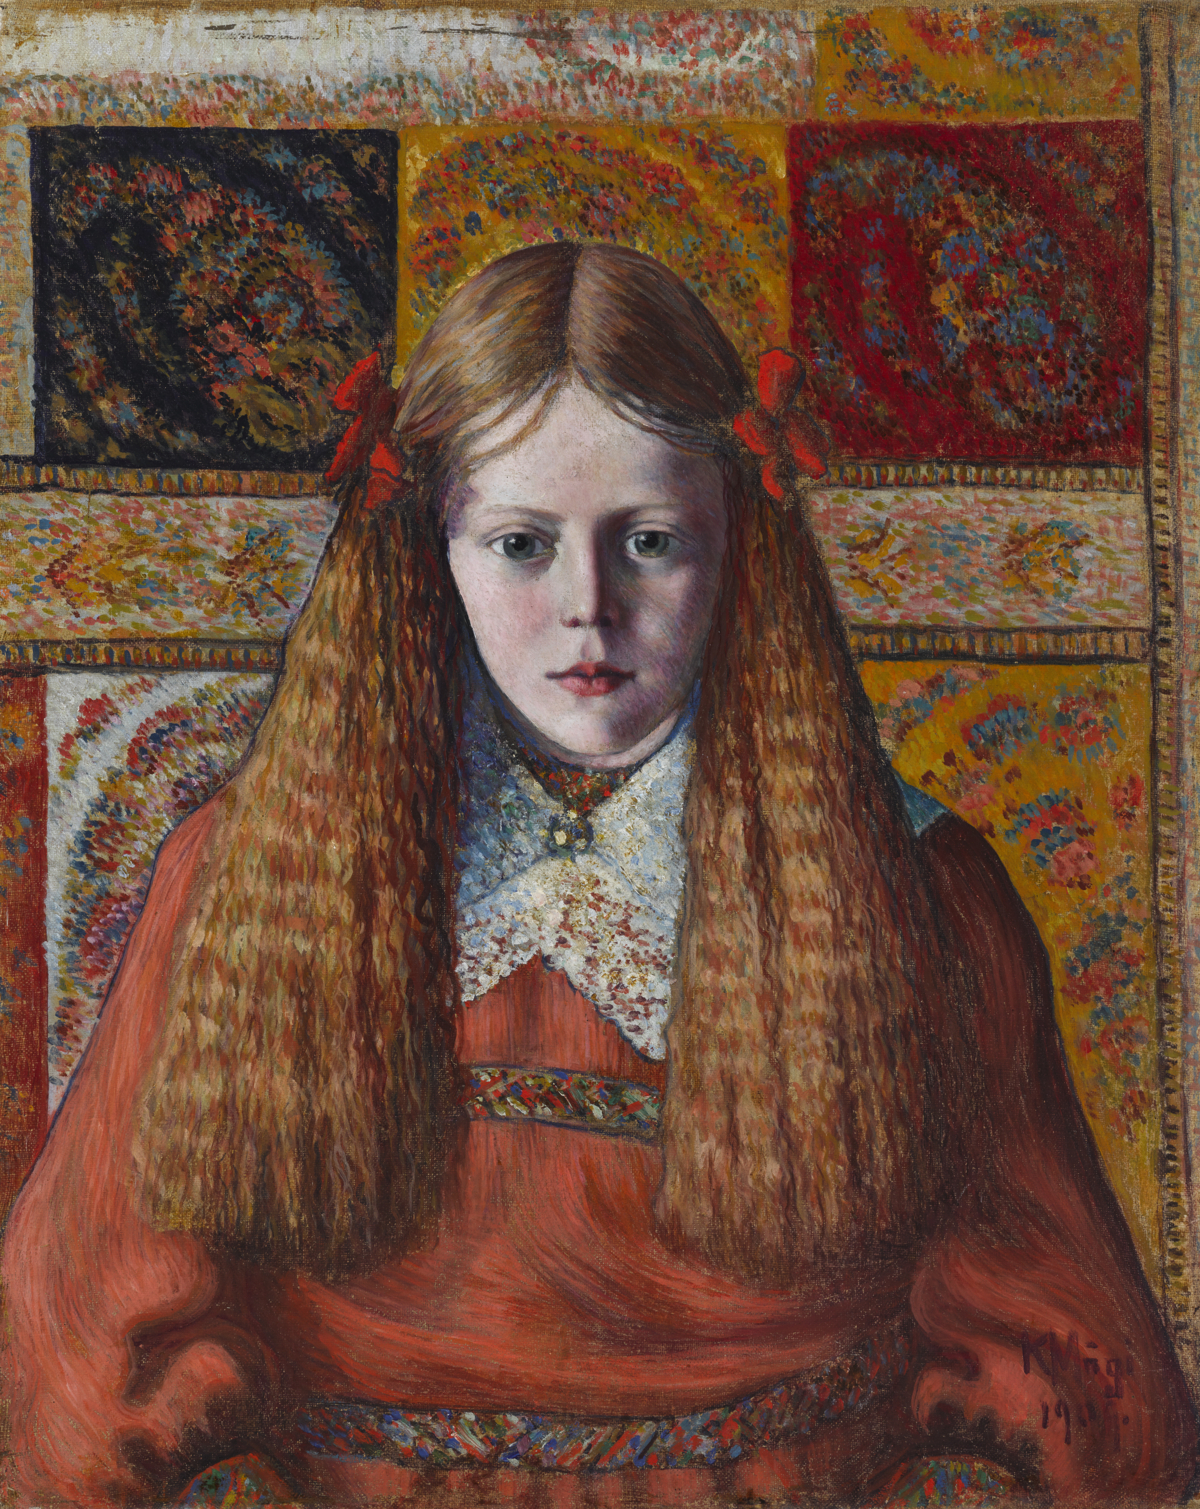 Konrad M&auml;gi, Portrett av norsk jente, 1909, Tartu kunstmuseum.

